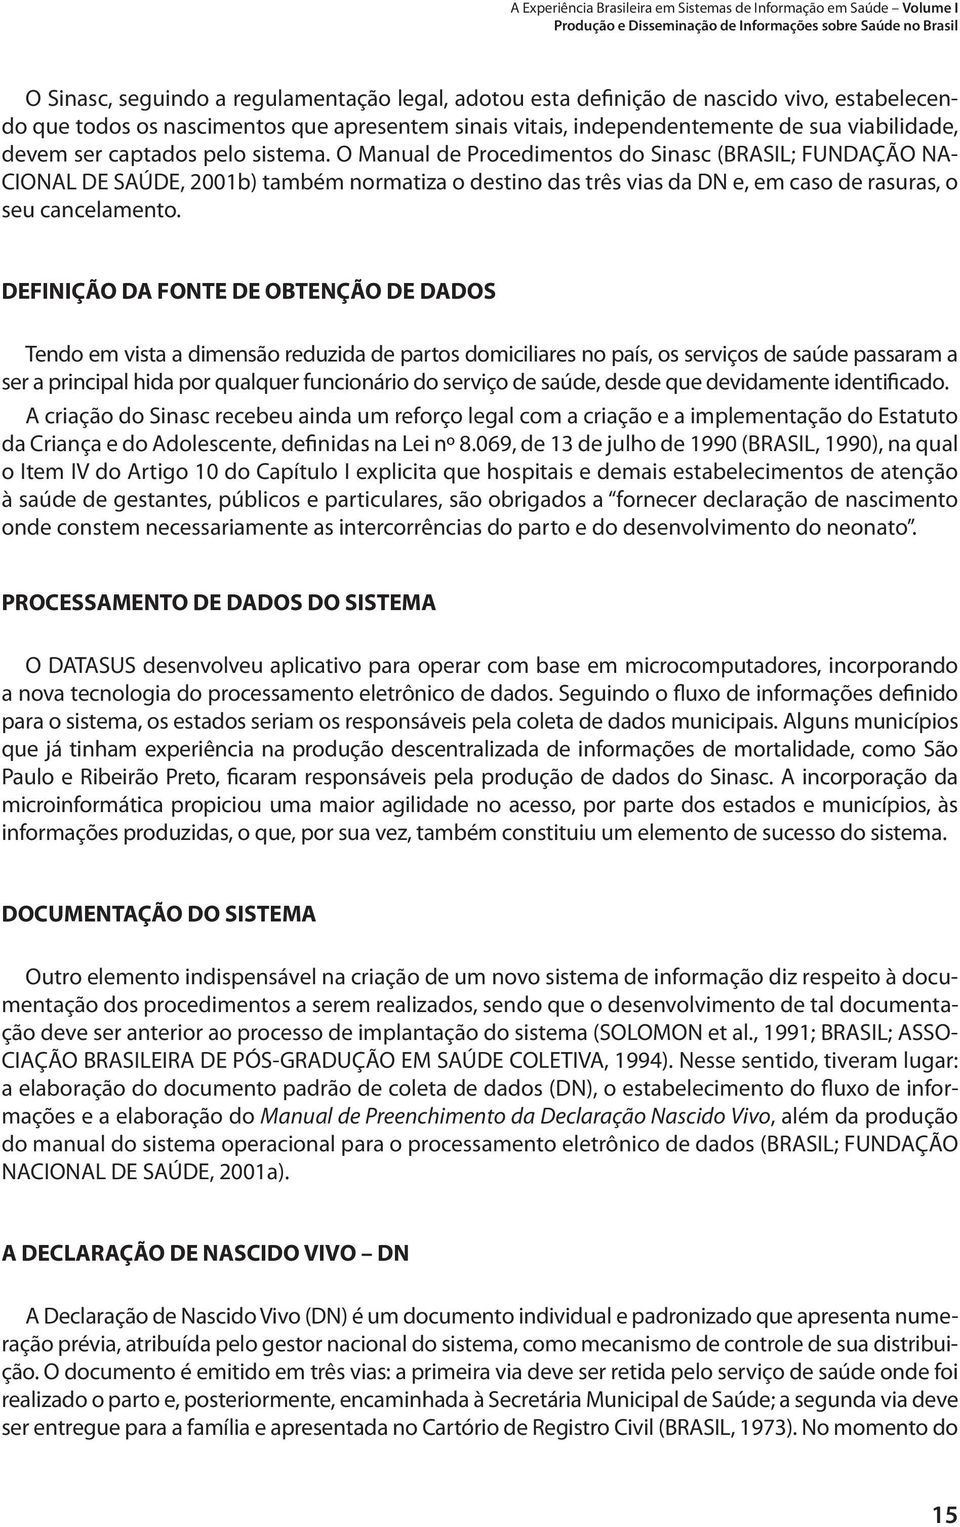 O Manual de Procedimentos do Sinasc (BRASIL; FUNDAÇÃO NA- CIONAL DE SAÚDE, 2001b) também normatiza o destino das três vias da DN e, em caso de rasuras, o seu cancelamento.